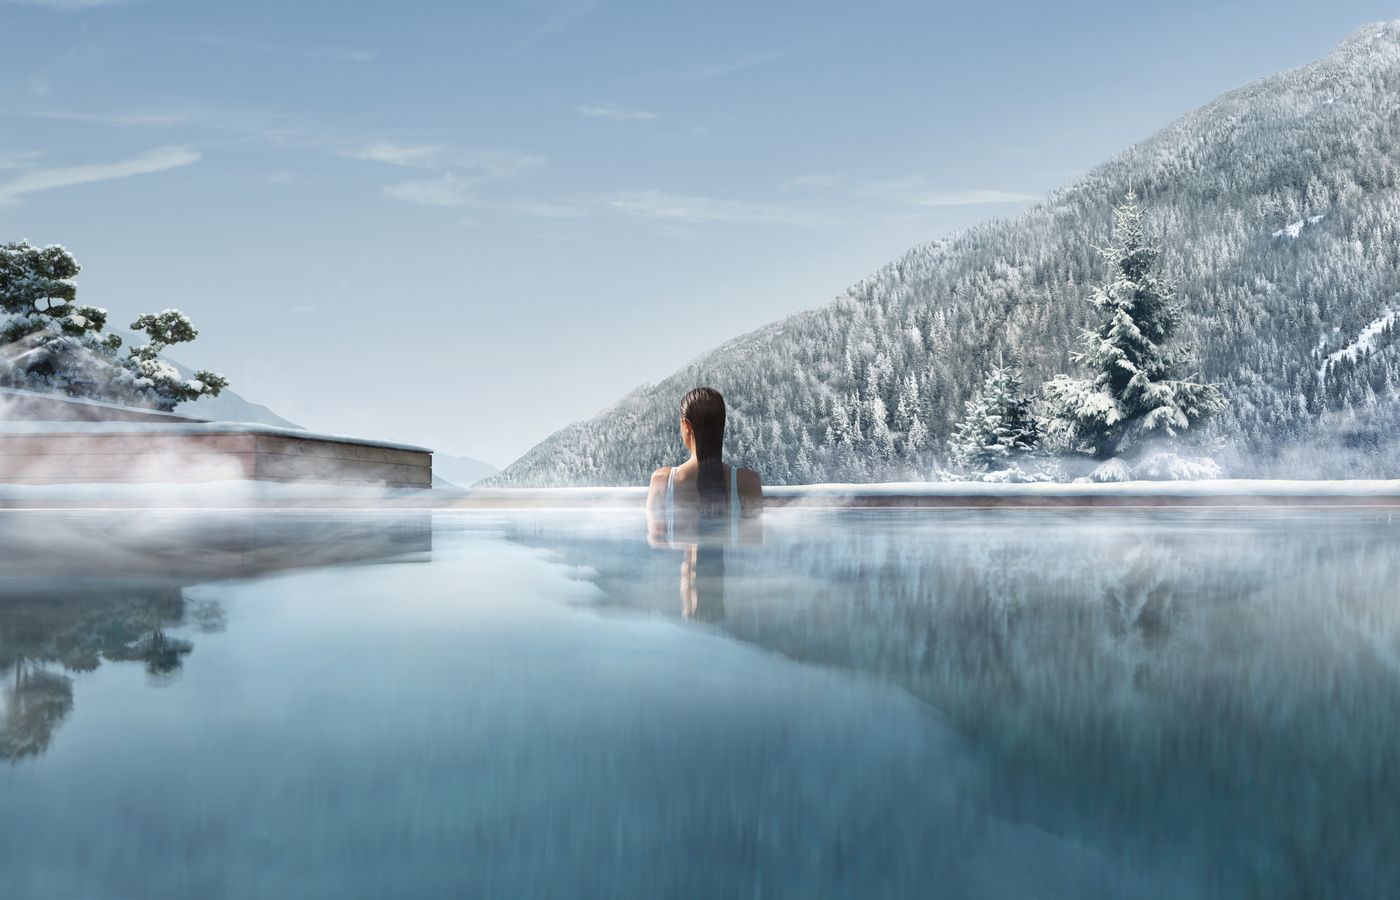 Trip Health - FitReisen - Lefay Resort & Spa Dolomiti in Pinzolo buche jetzt Deinen Wellness & Beauty Urlaub im Lefay Resort & Spa Dolomiti in der Region Südtirol, in Italien günstig bei uns!